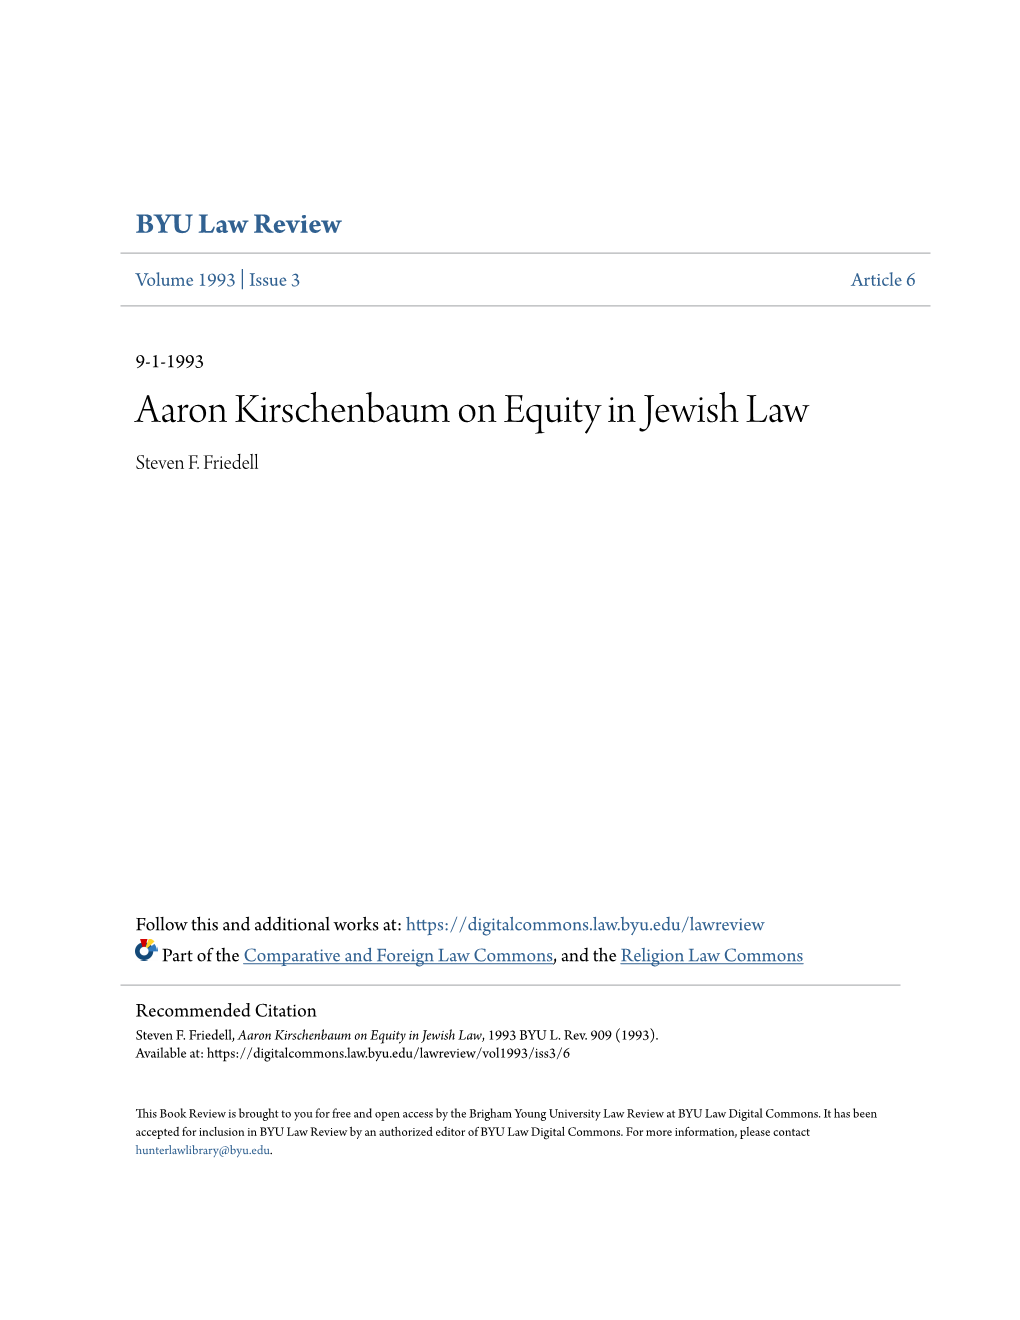 Aaron Kirschenbaum on Equity in Jewish Law Steven F